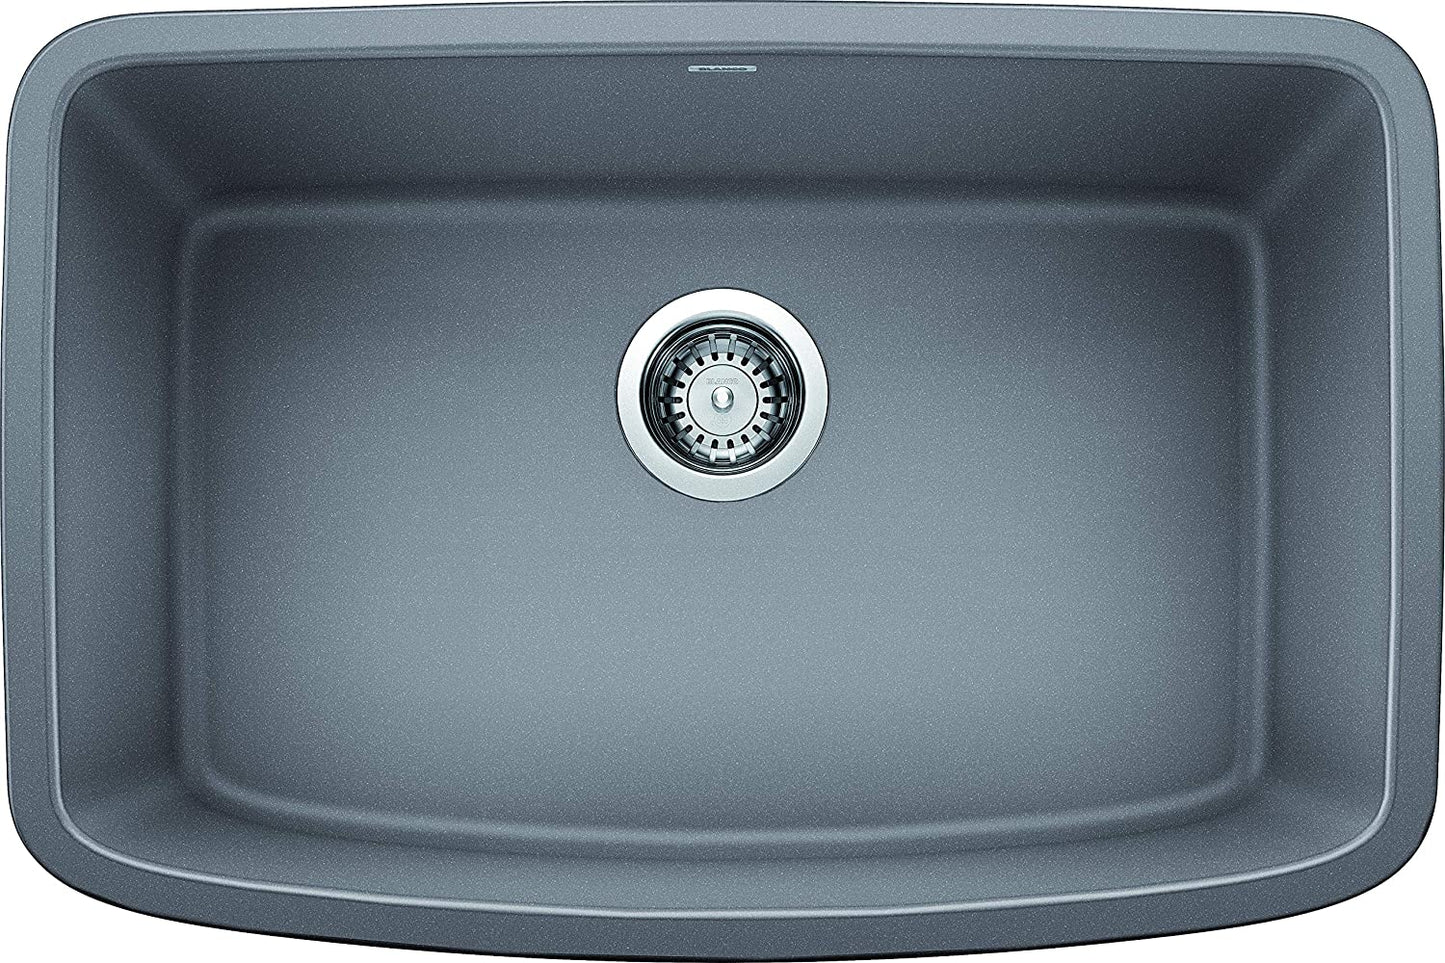 Valea Silgranit Single Bowl Undermount Kitchen Sink, 27" X 18"- Metallic Gray